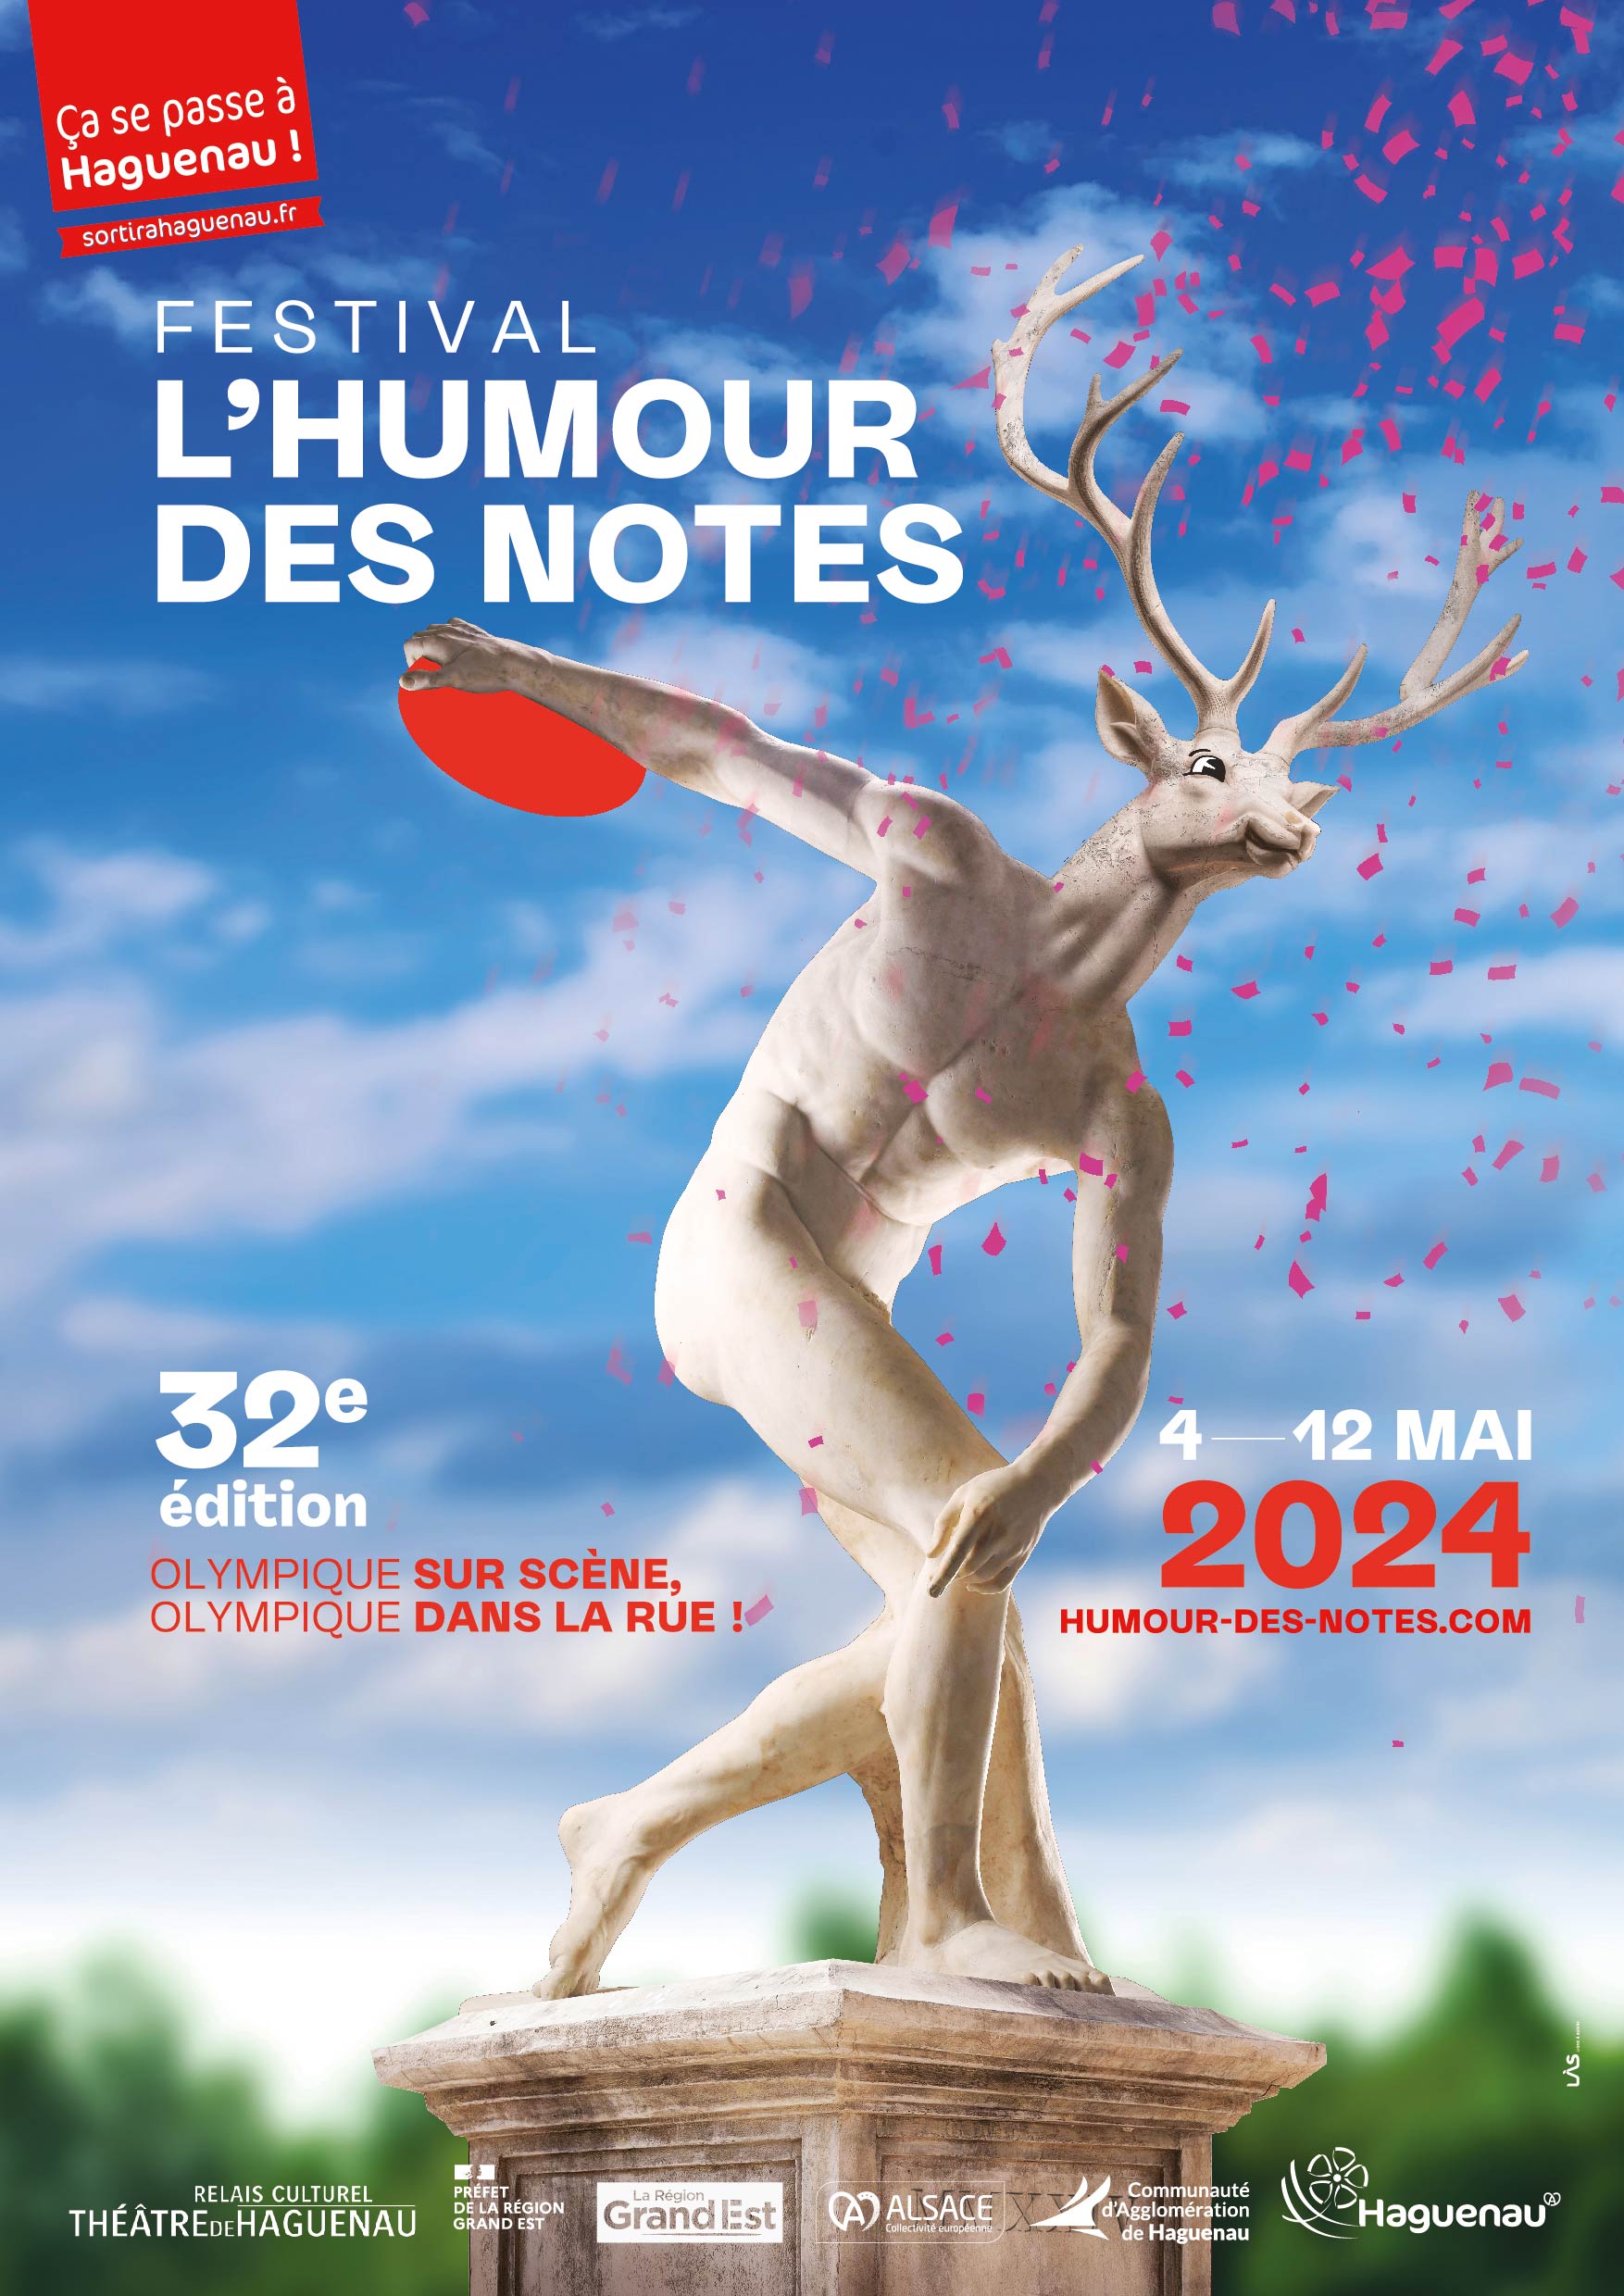 Pour cette 32e édition, le festival L’Humour des Notes se met dans une ambiance Olympique !